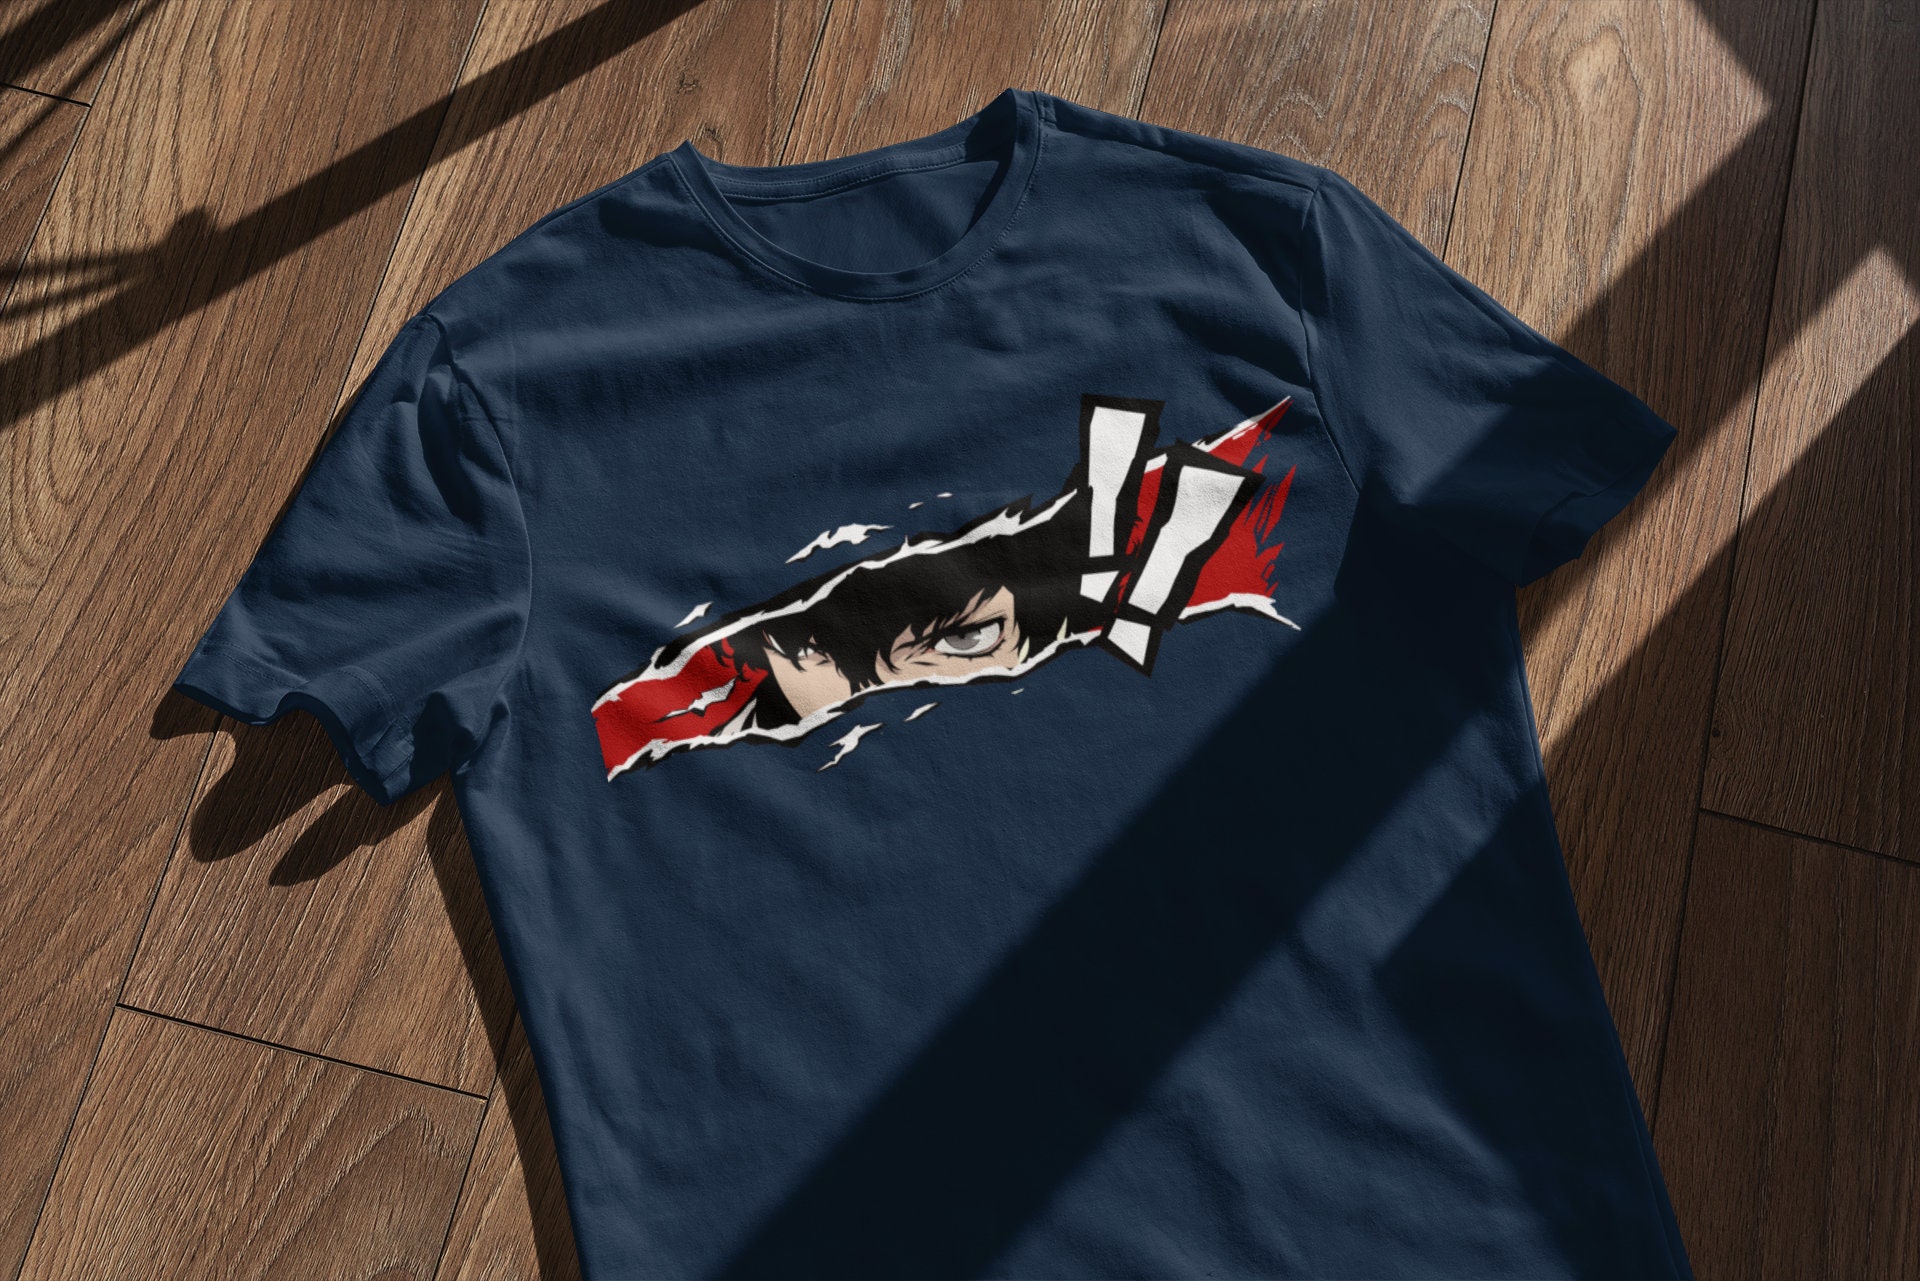 sovjetisk Ekstremt vigtigt kompensere Persona Five T-shirt/ Persona Joker Shirt/ Persona 5 Character - Etsy Norway